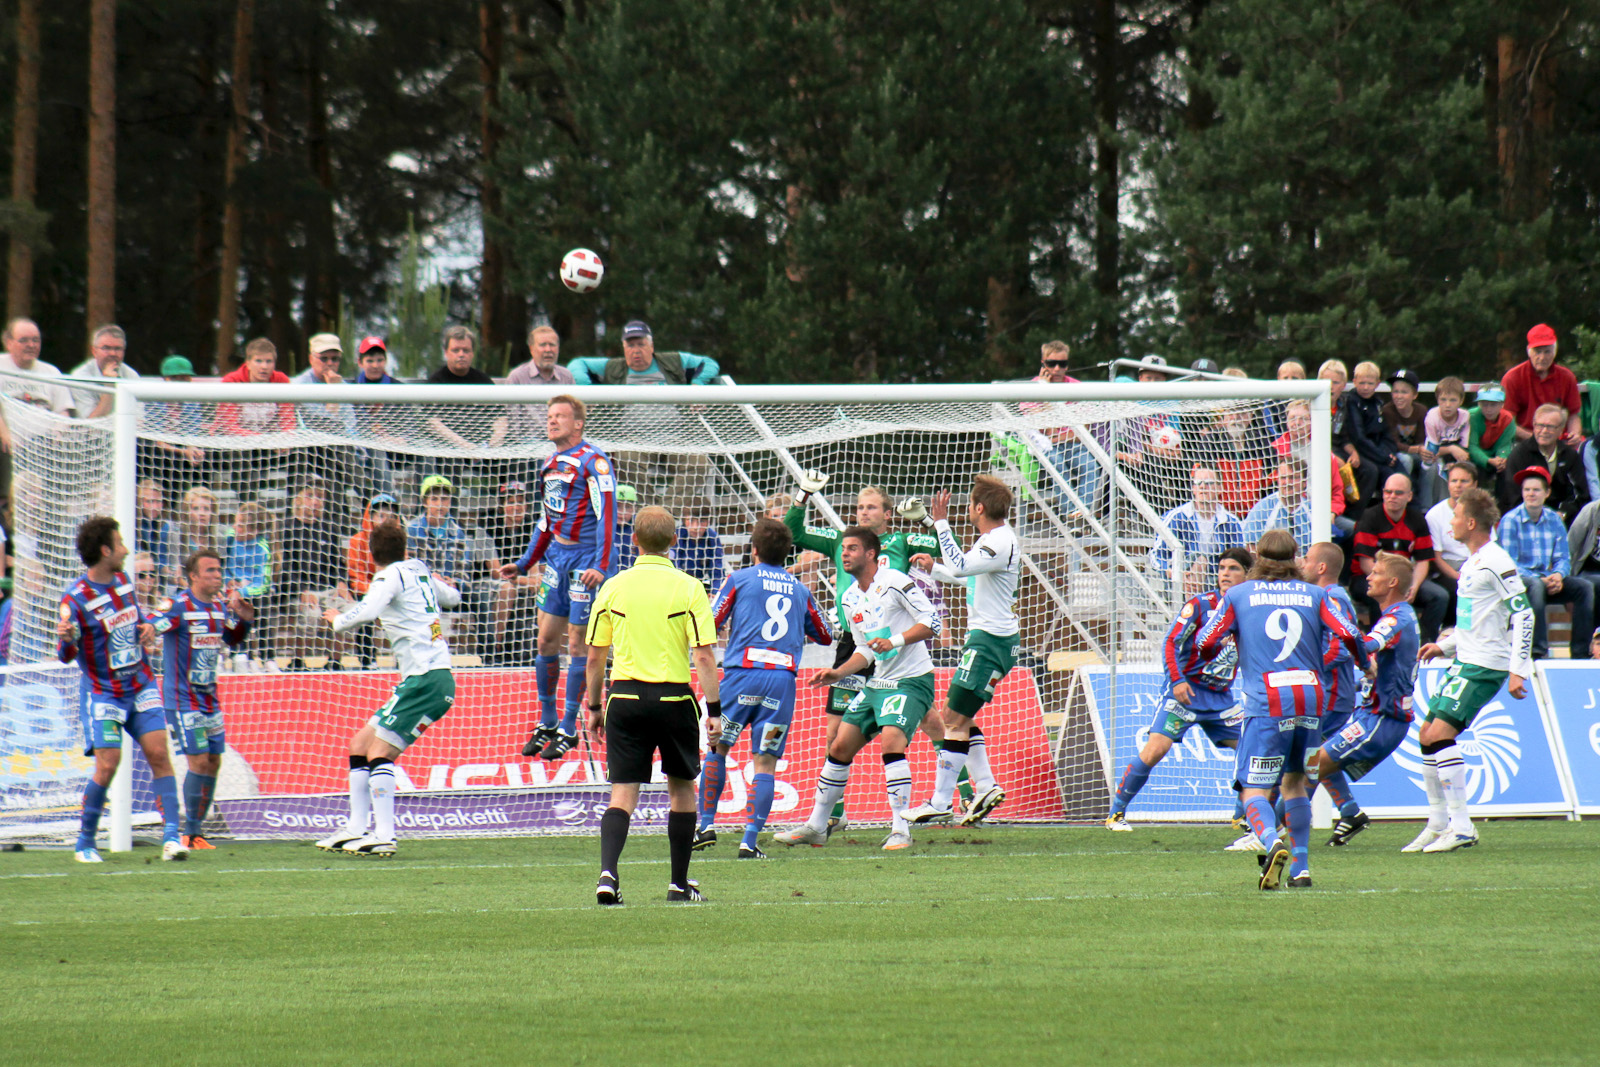 Jarkko Okkonen nousi tässäkin tilanteessa korkeimmalle ja on pelannut koko kauden äärimmäisen korkeatasoisesti.